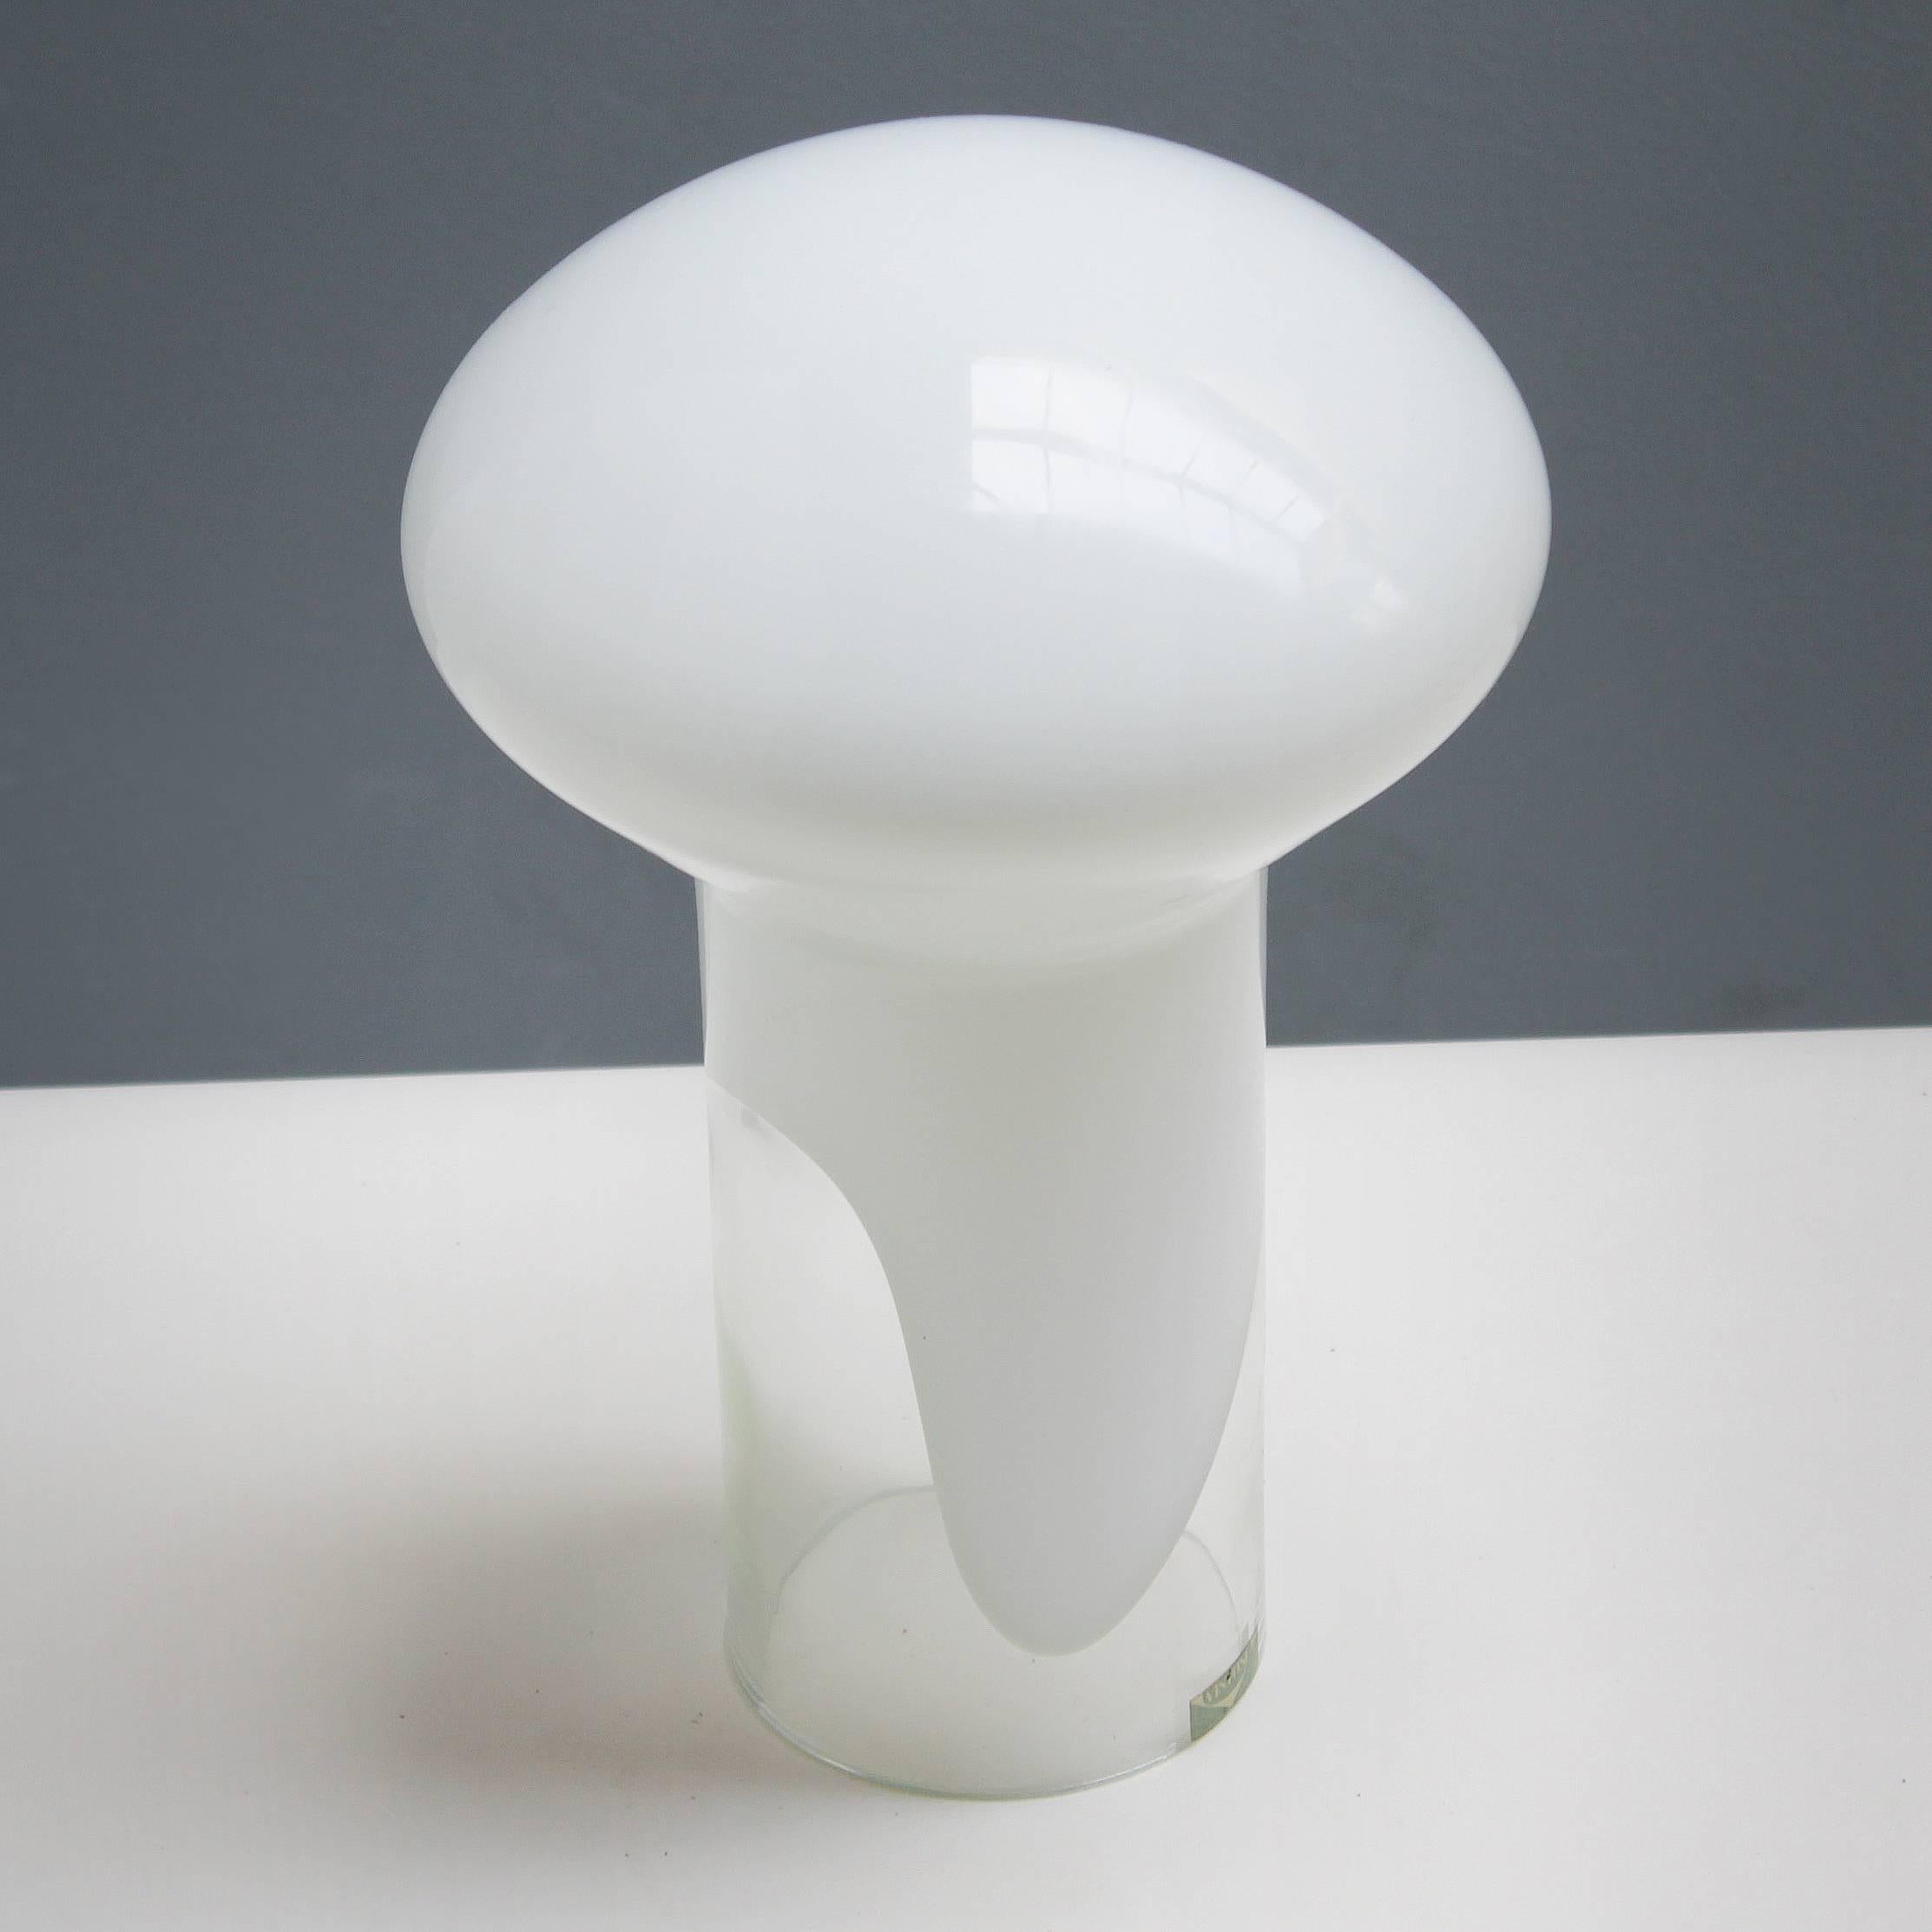 Rare mushroom table lamp 'L250' by Gino Vistosi for Vetreria Vistosi Murano, Italy.
handblown Murano glass. Dimensions: height 11.8 in. (30 cm), diameter 7.9 inches (20 cm).
One bulb E17 (110 V) 14-17 mm, small Edison screw (SES), the wire is good